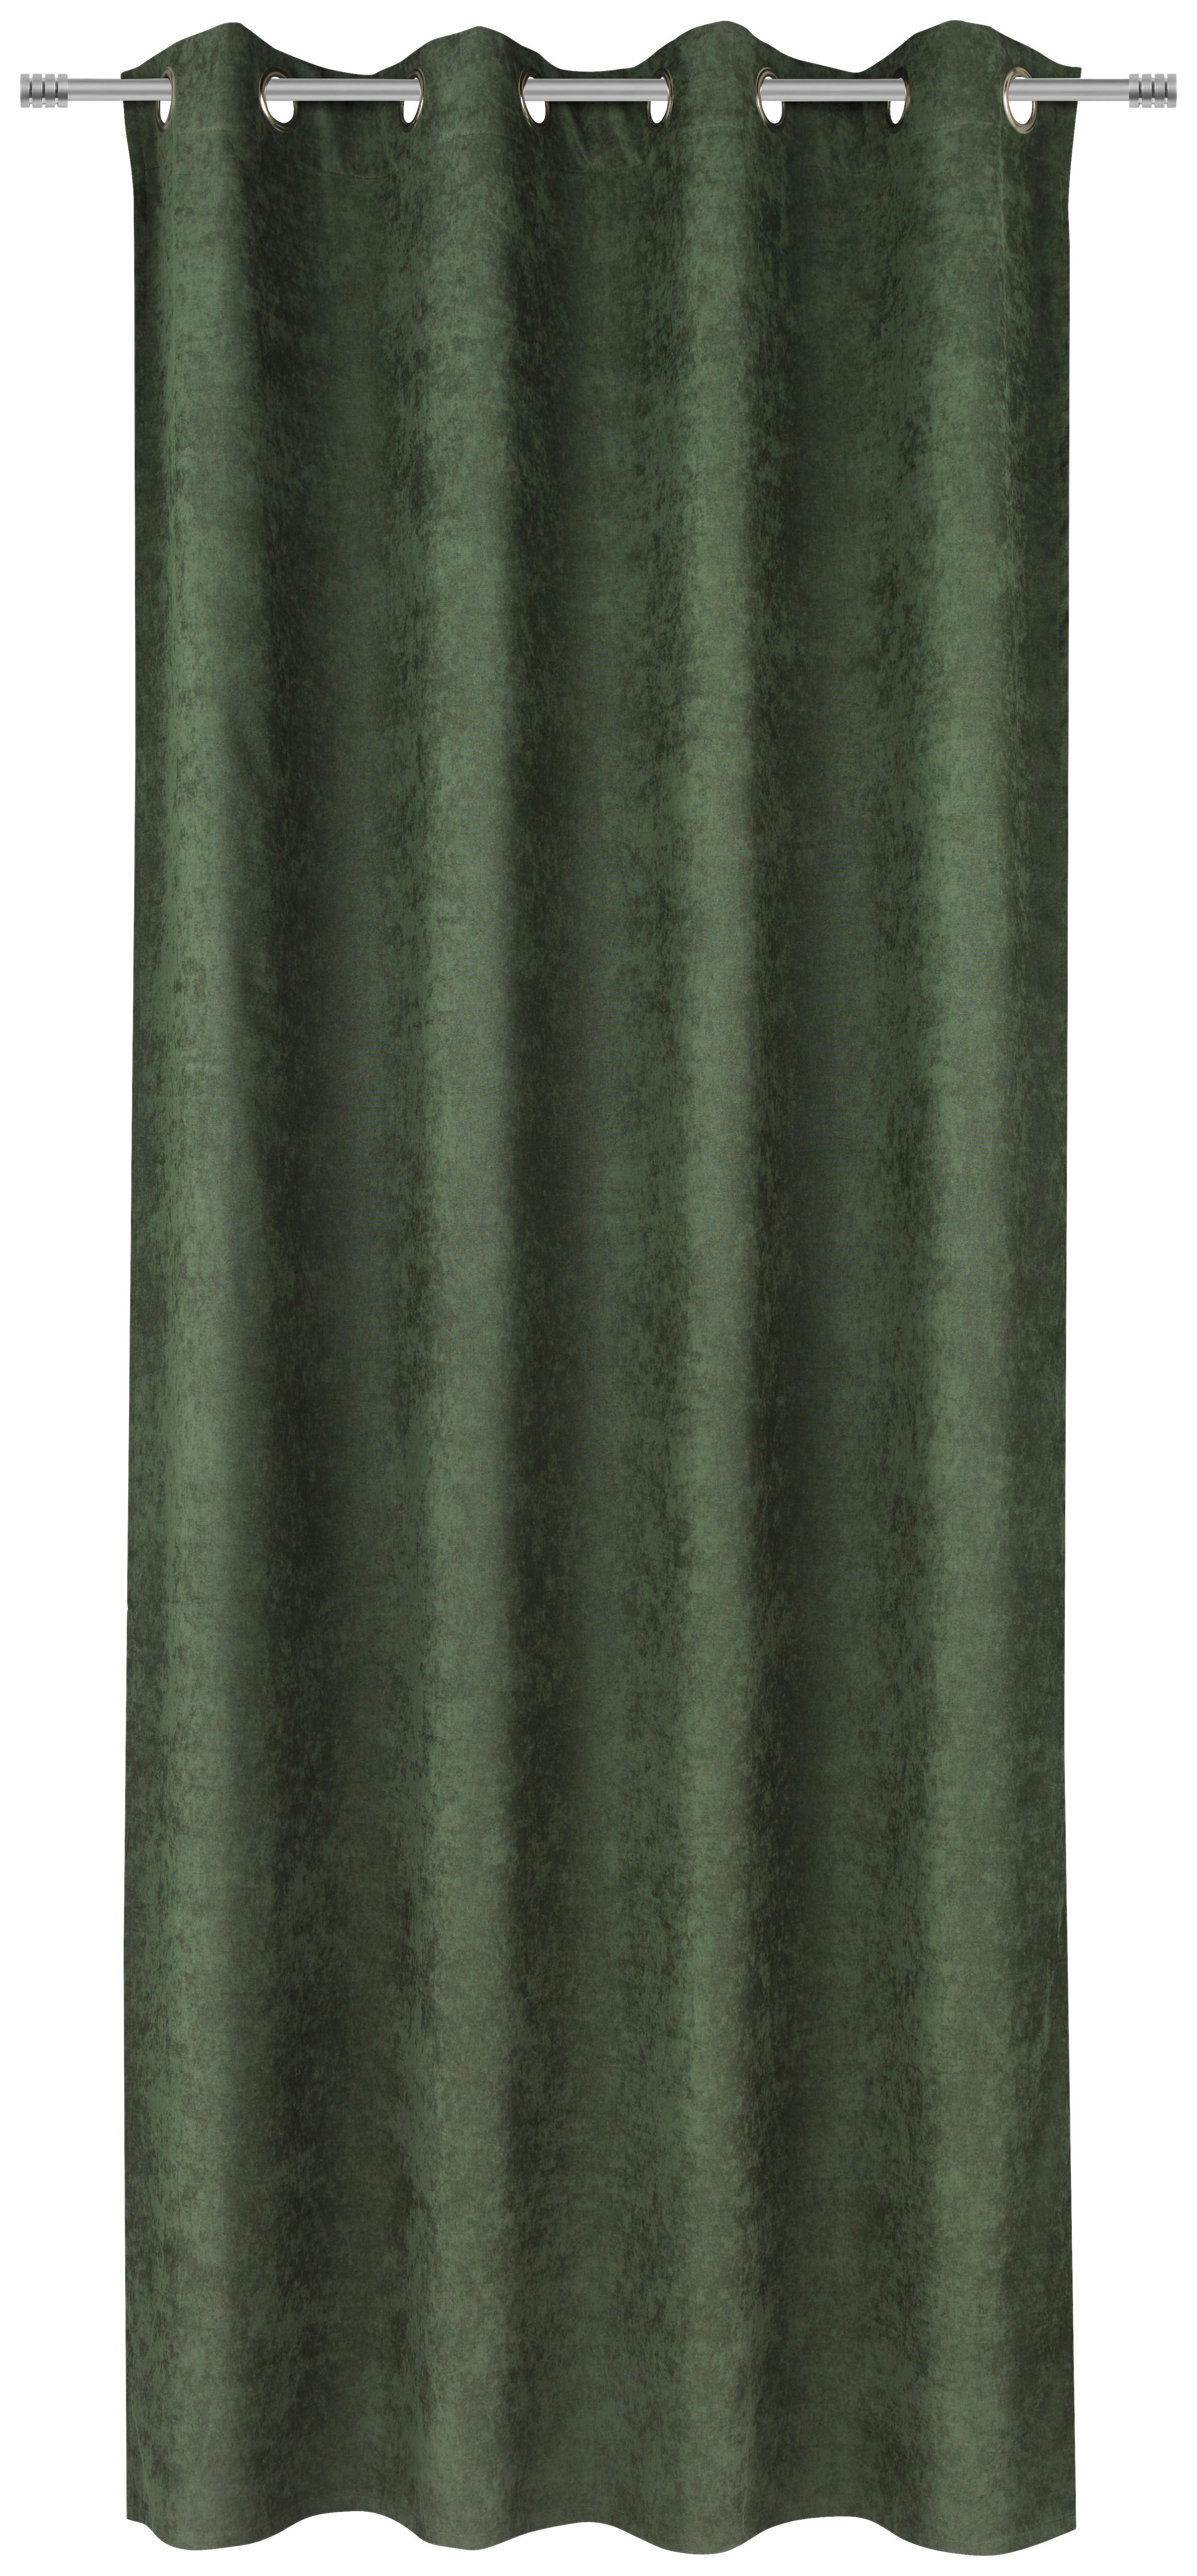 ZAVESA SA KARIKAMA zelena - zelena, Konvencionalno, tekstil (140/245cm) - Esposa